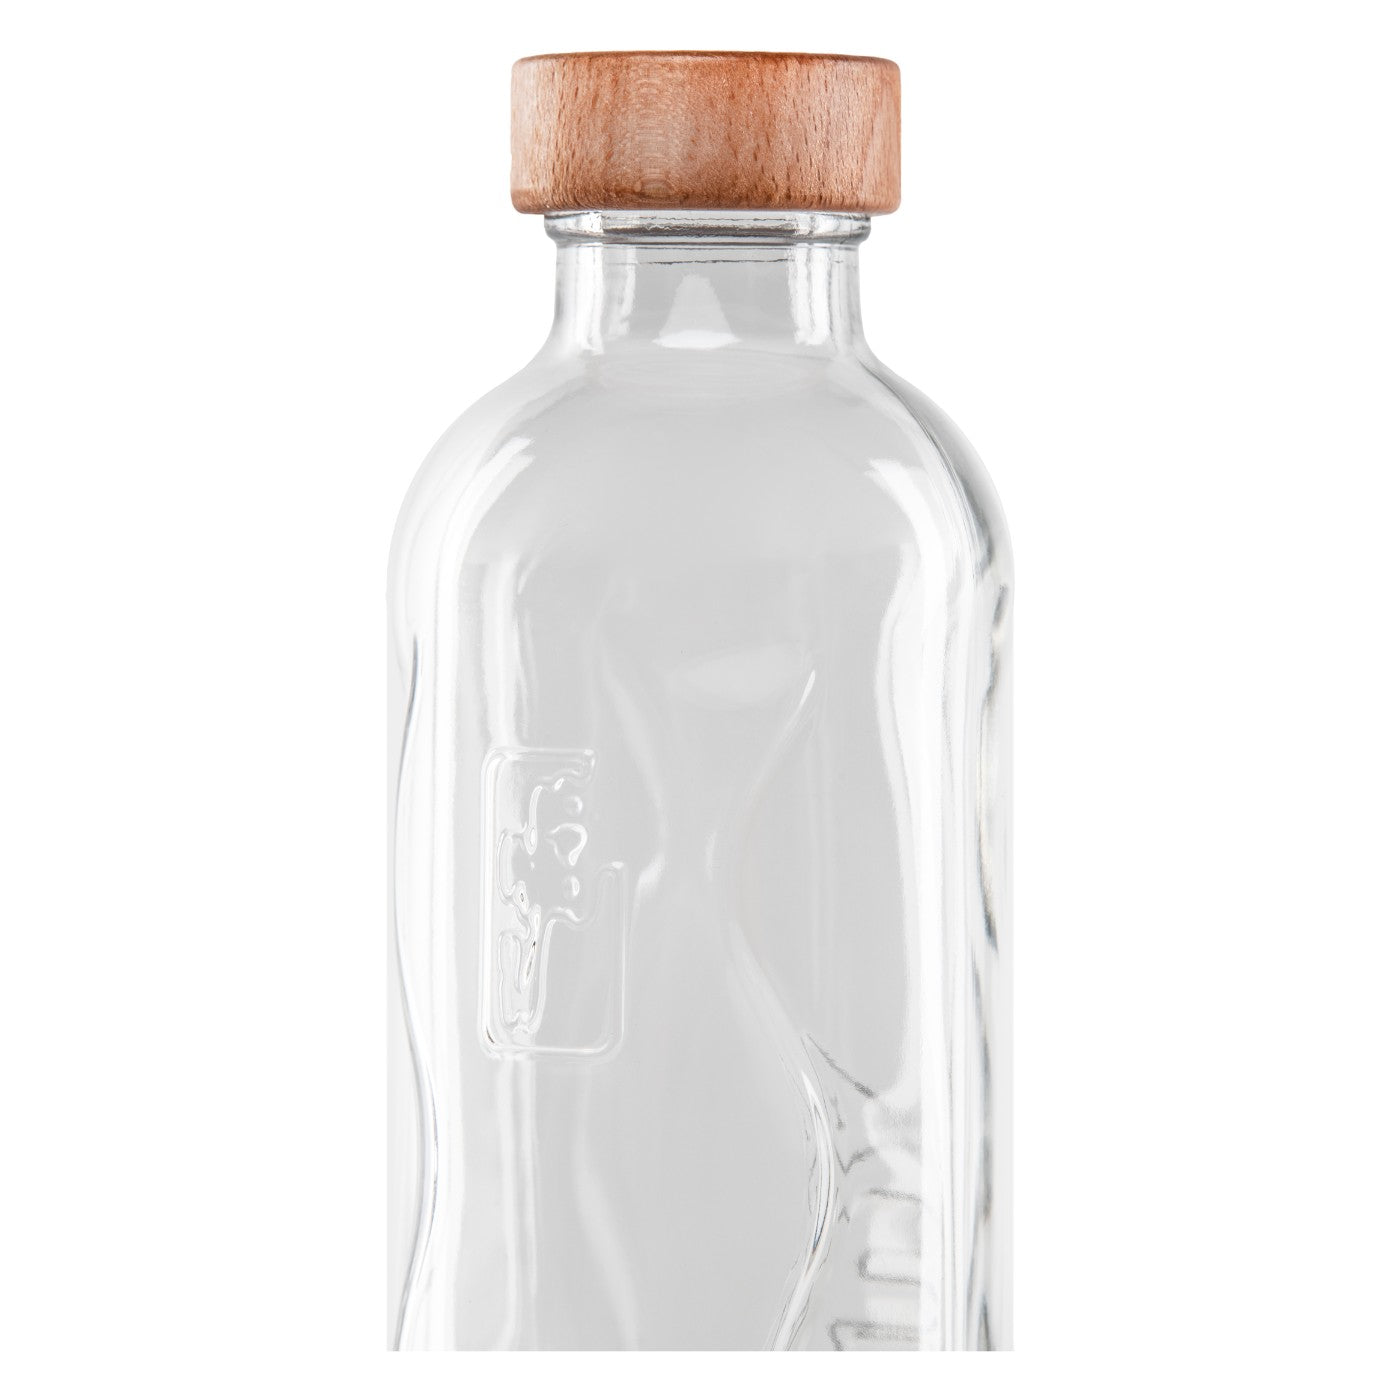 oro hologramm auf flaska glaswasserflasche mit schraubverschluss ohne deckel